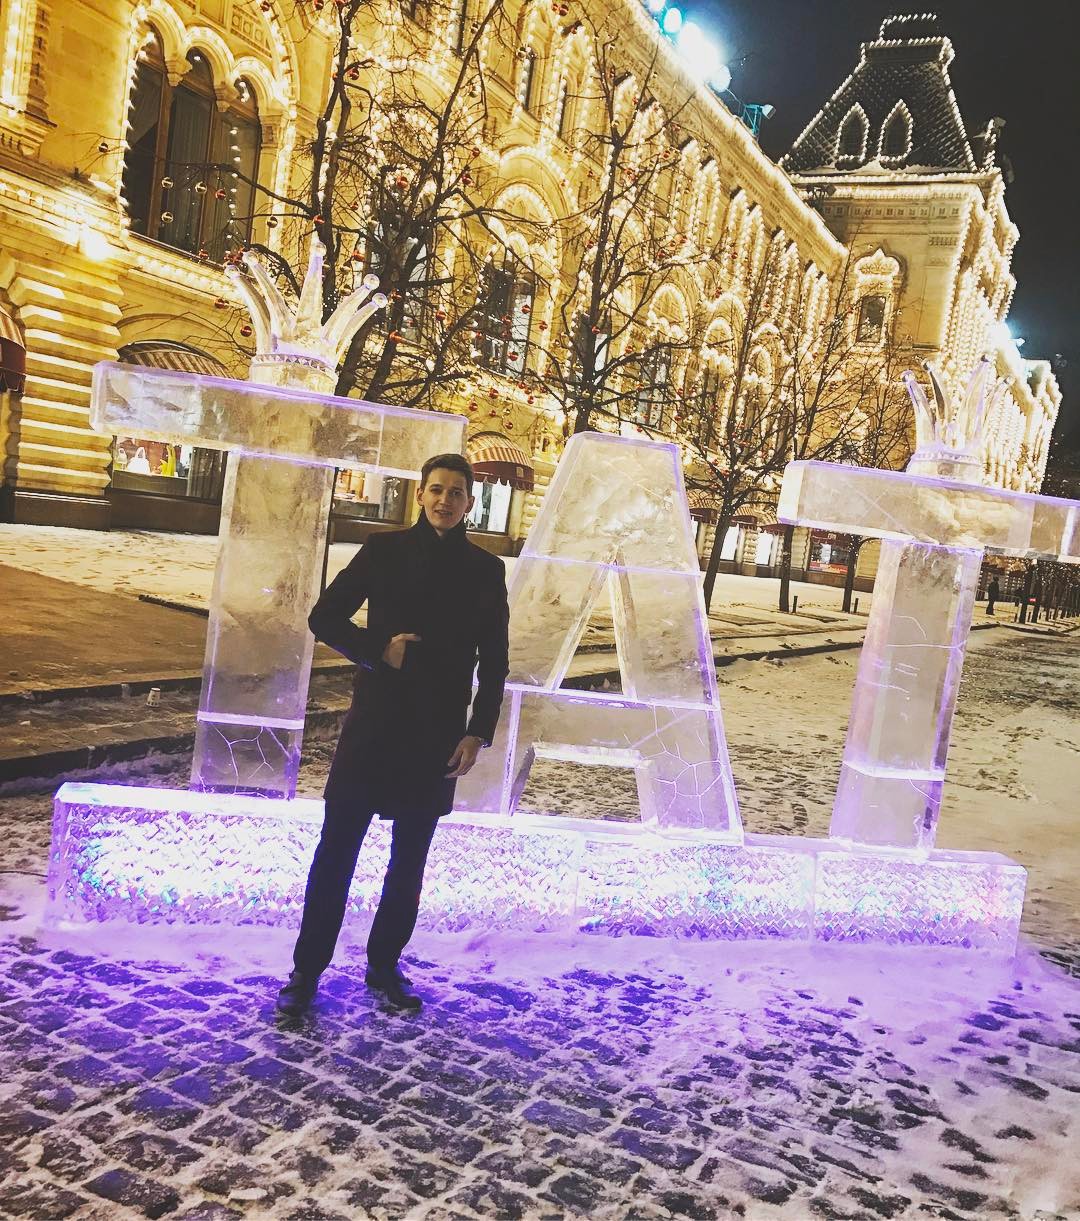 Максим Ковтун выложил снимок в своем Инстаграме